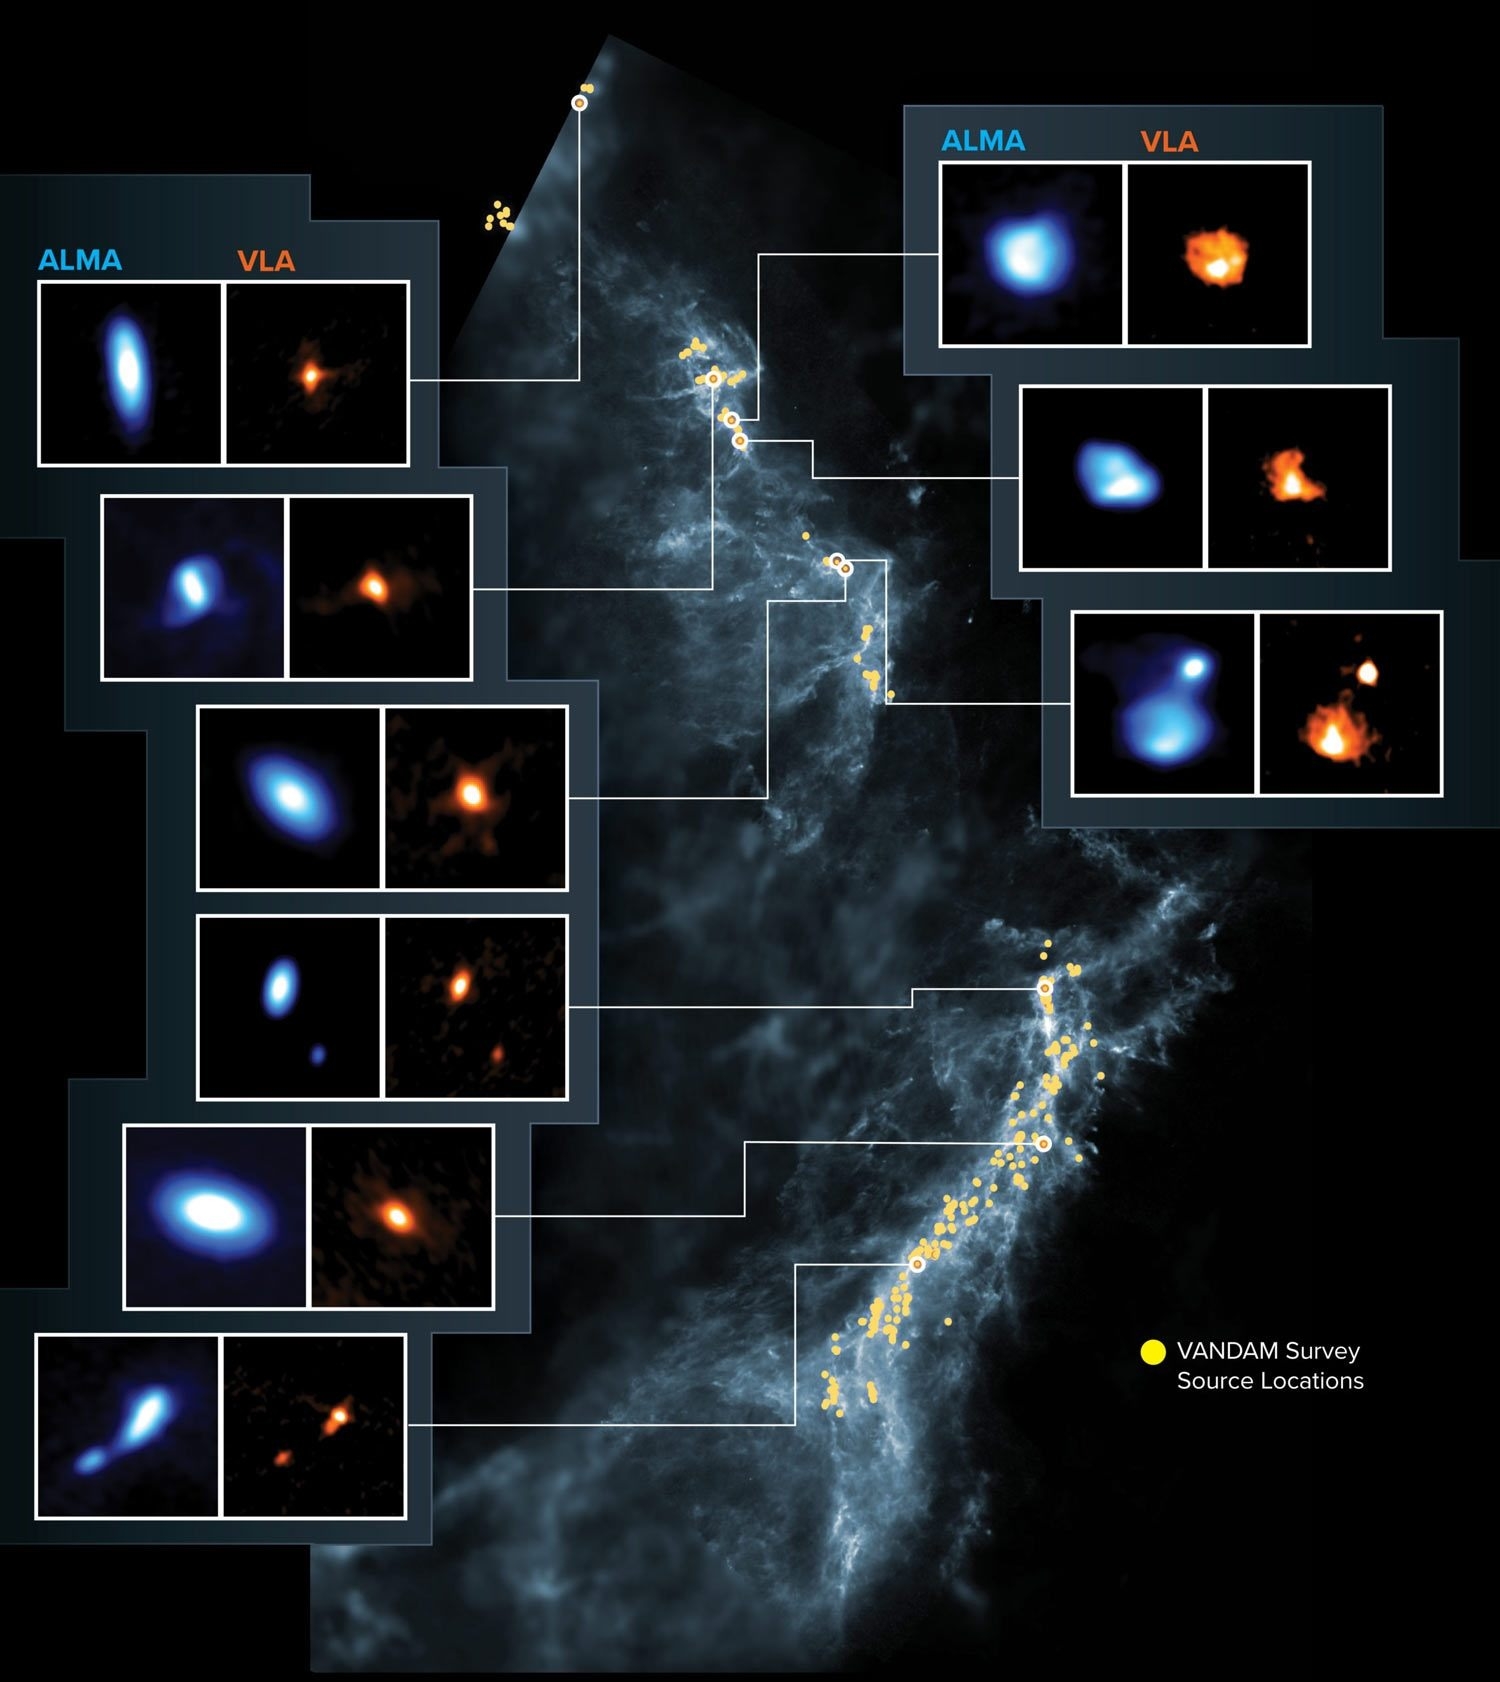 圖片顯示了獵戶座分子雲中VANDAM調查的目標，黃點是原恆星的位置；方框中的影像是由ALMA和VLA拍攝的年輕原恆星。圖片來源：NRAO/AUI/NSF